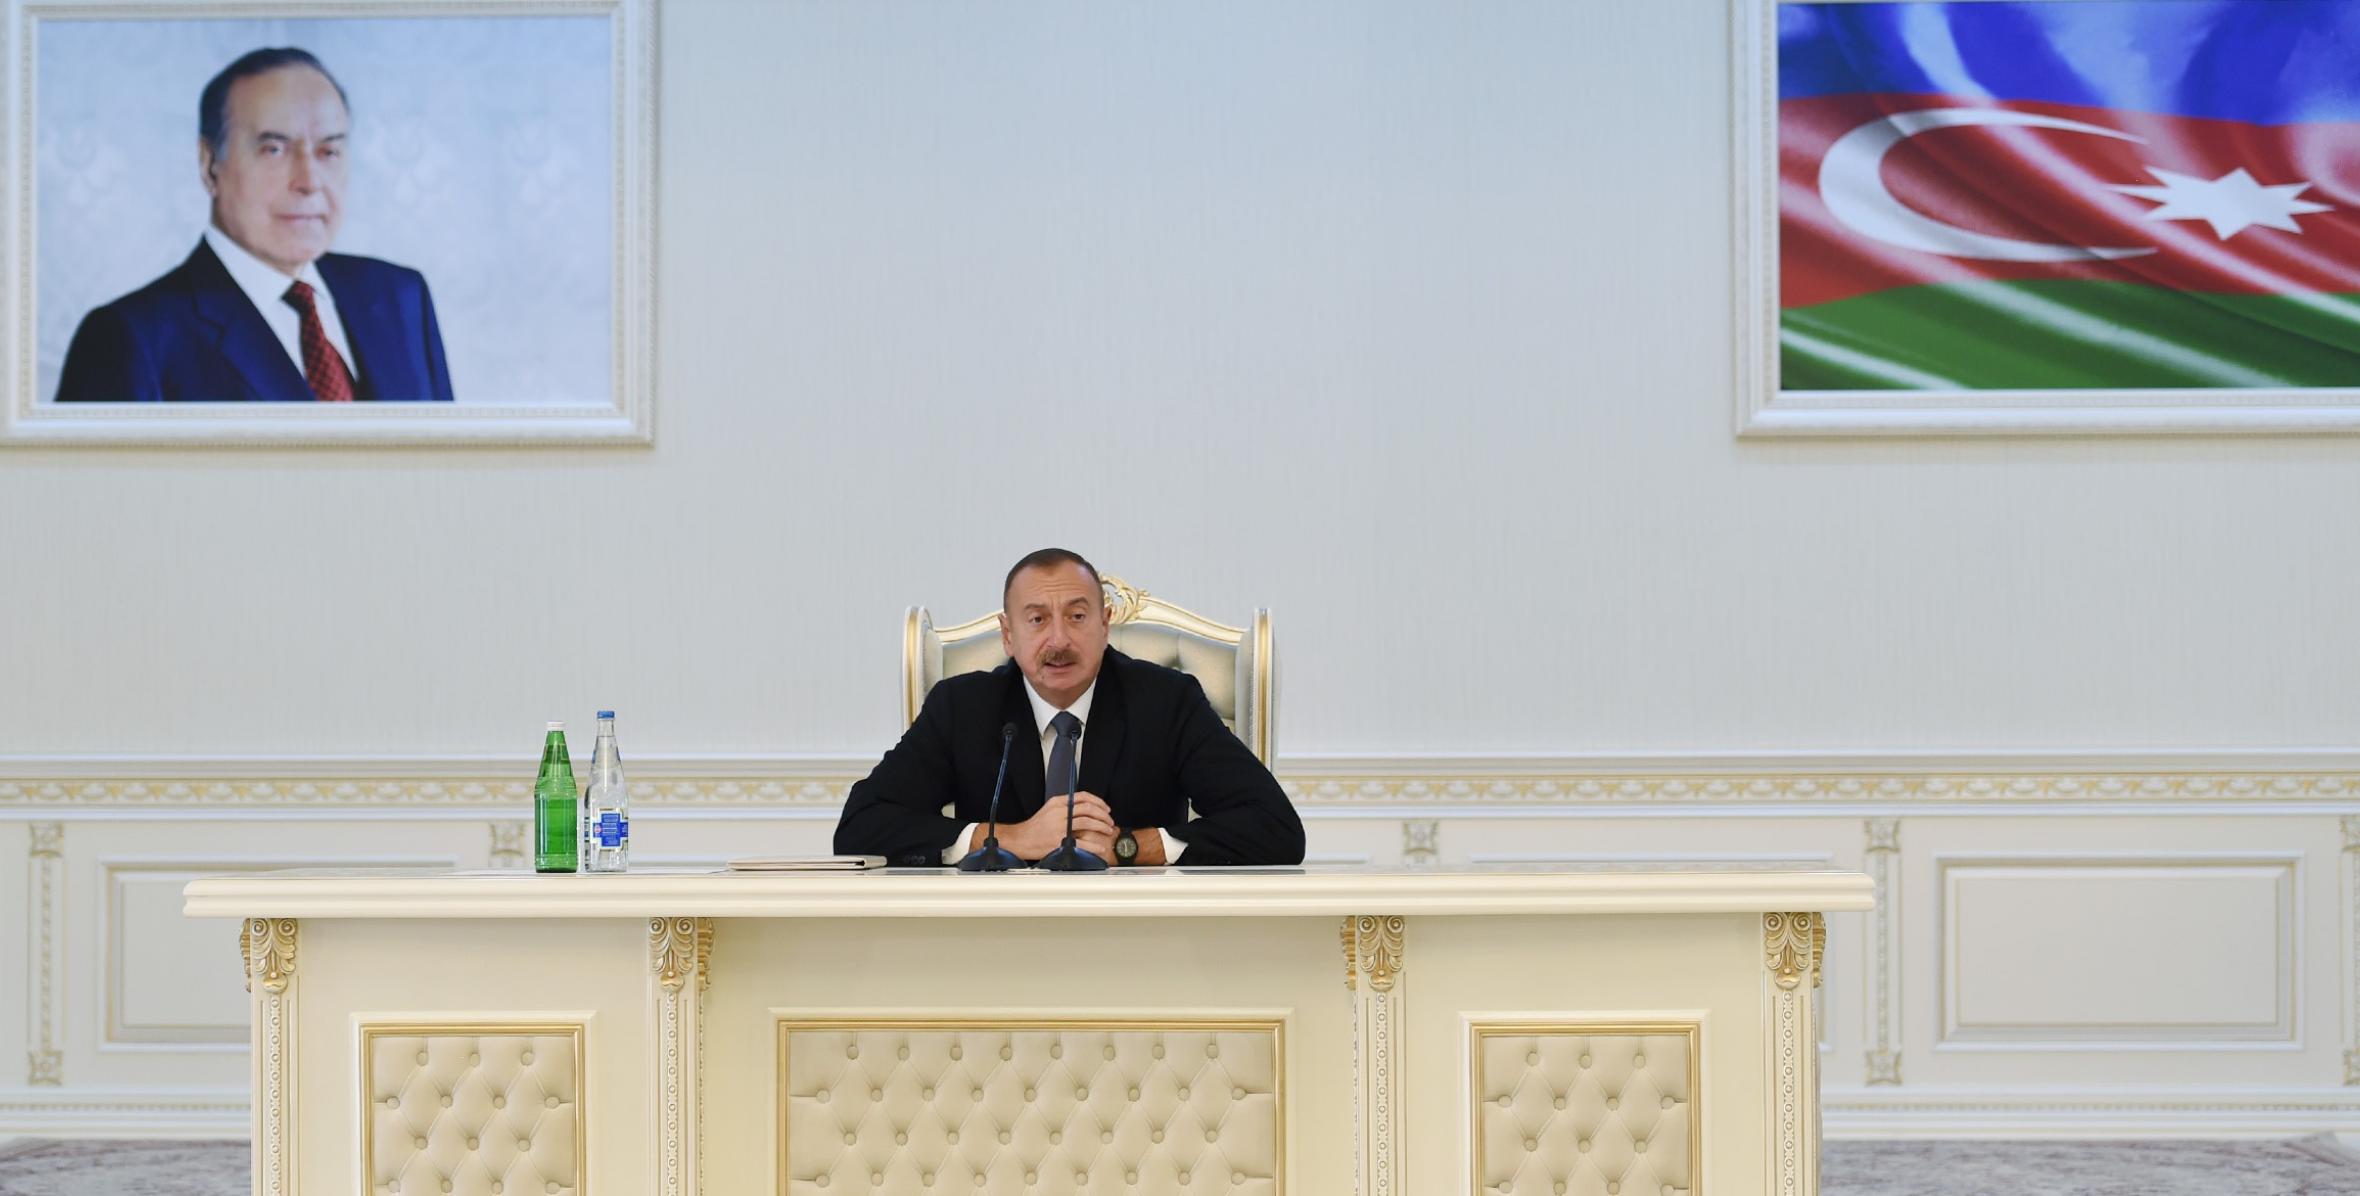 Заключительная речь Ильхама Алиева на открытии здания Центра Гейдара Алиева в Сумгайыте